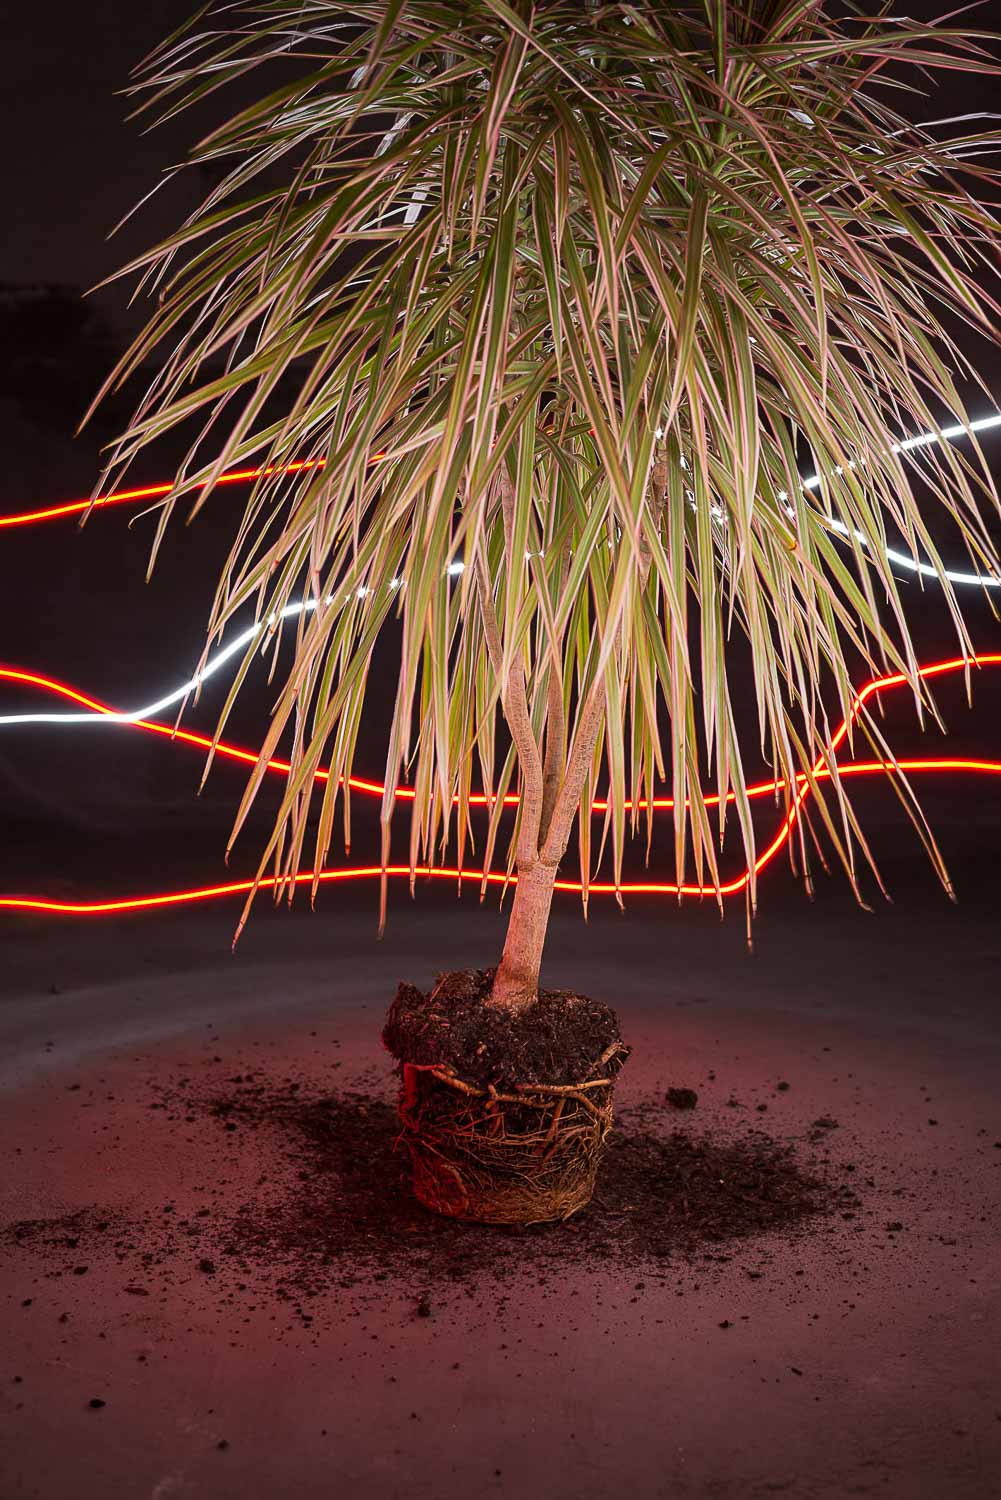 Die Zimmerpflanze ohne Topf wird durch einen Lichtstrahl kunstvoll beleuchtet